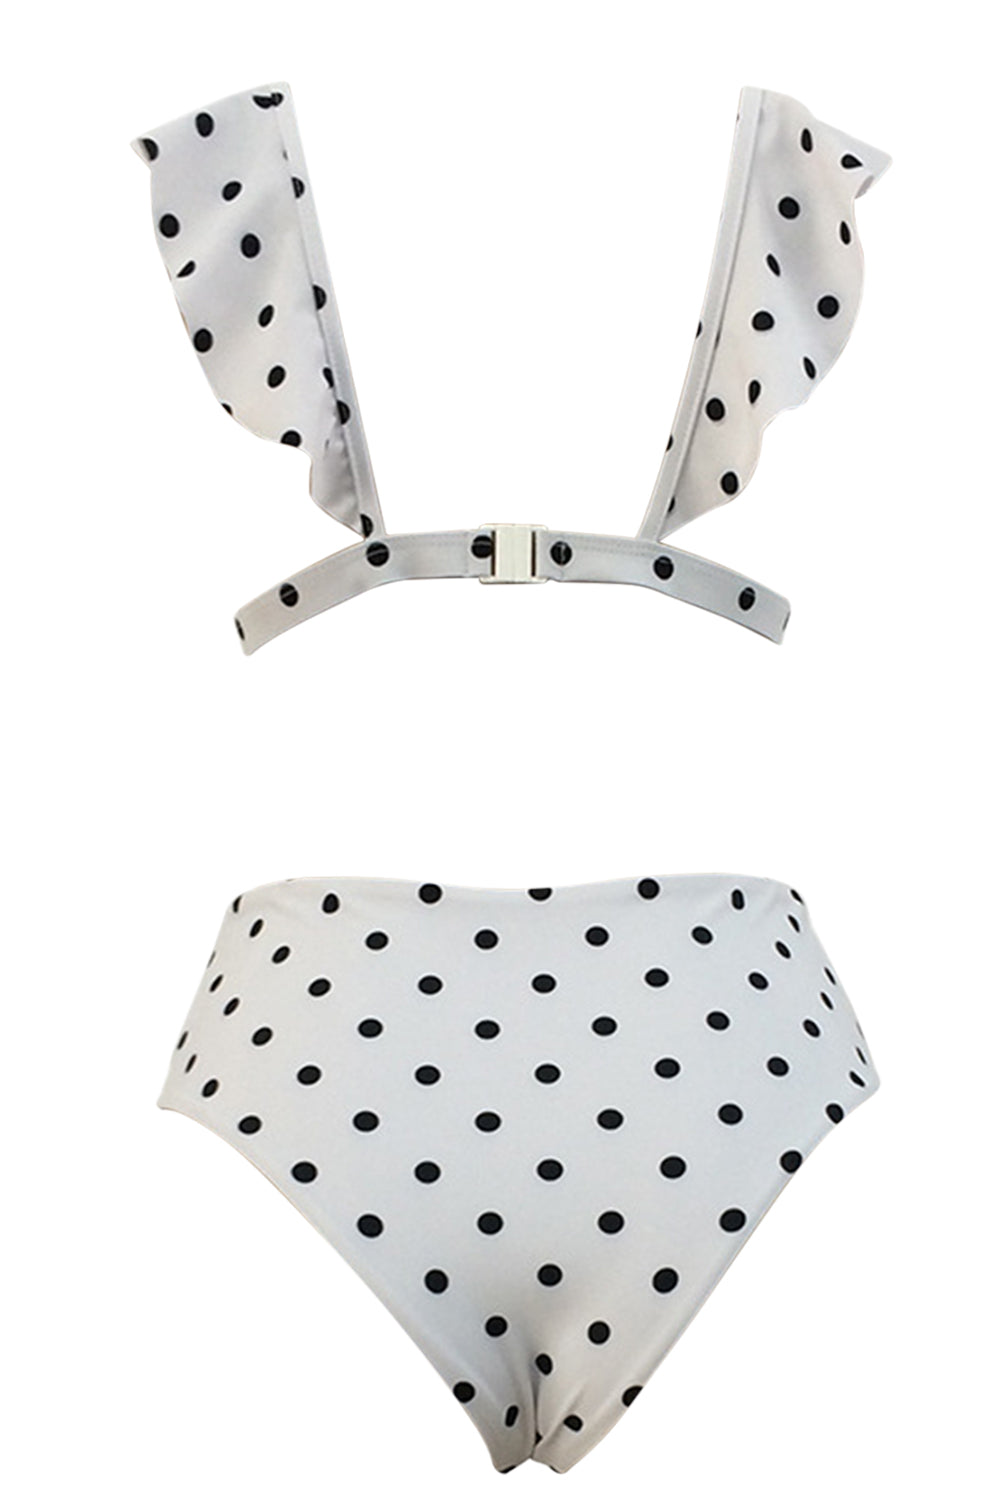 Iyasson Polka dot Printing Falbala Bikini Sets